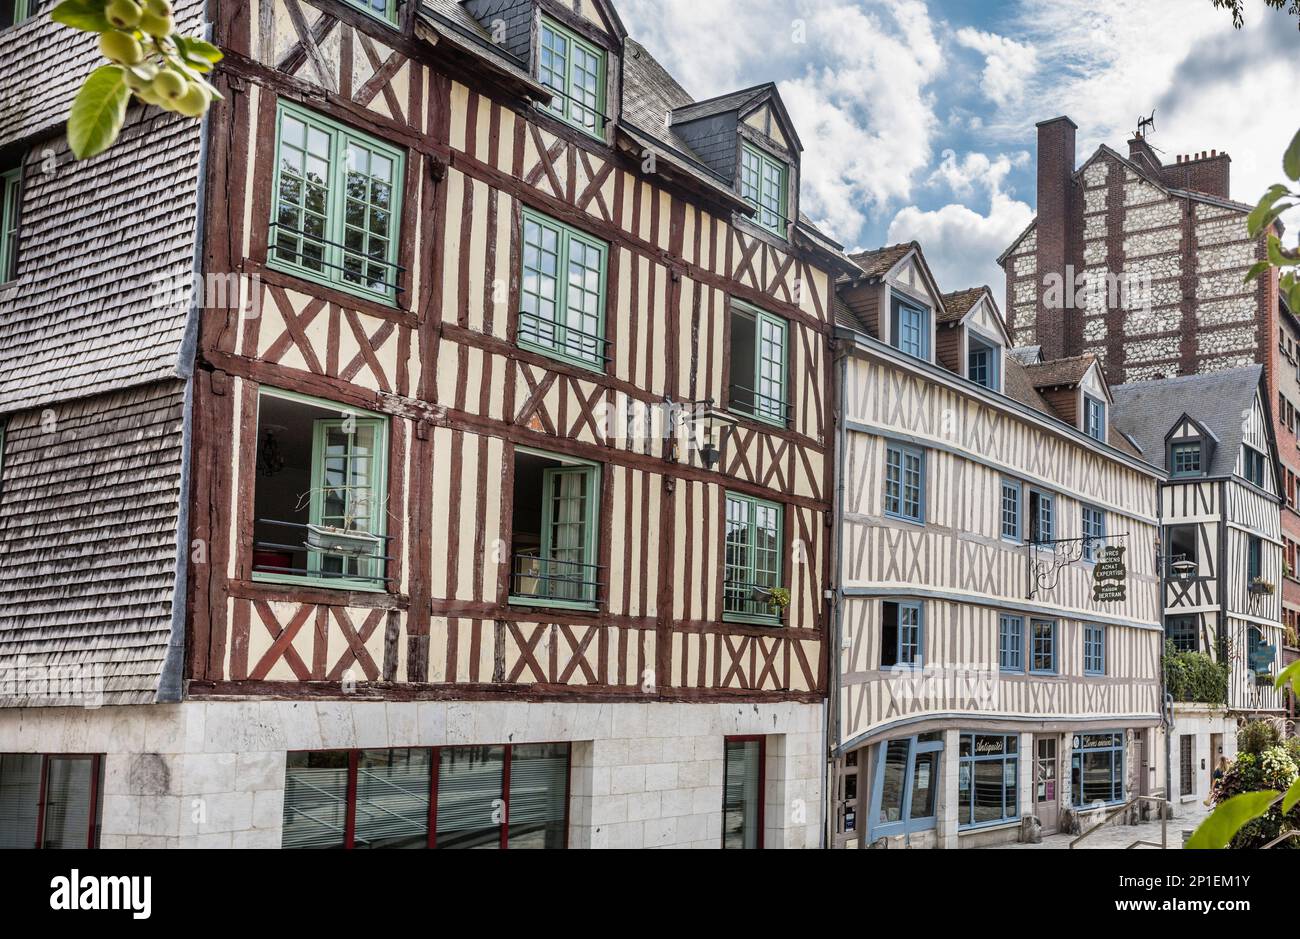 Maisons à colombages de 17th siècles dans la rue Molière, Rouen, Normandie, France Banque D'Images